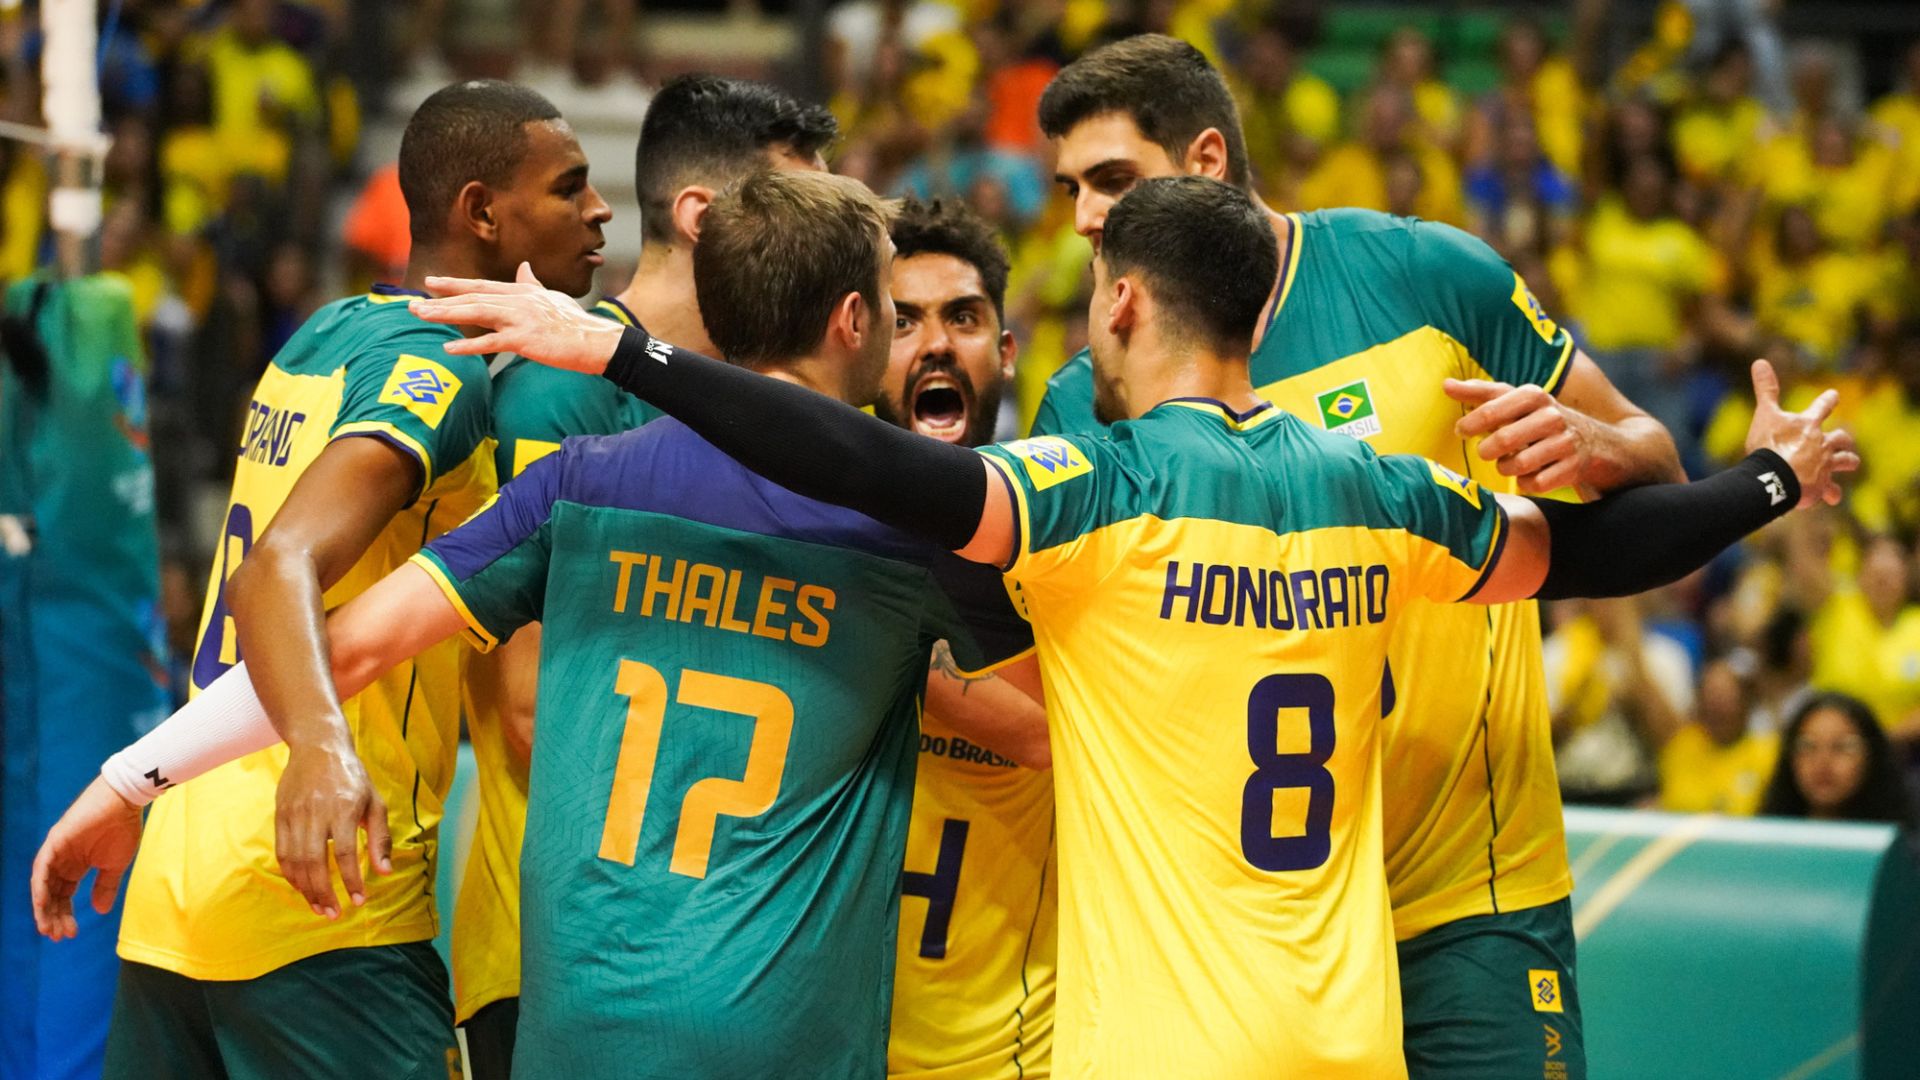 É de tie break! Com virada espetacular, Brasil vence Argentina no vôlei  masculino